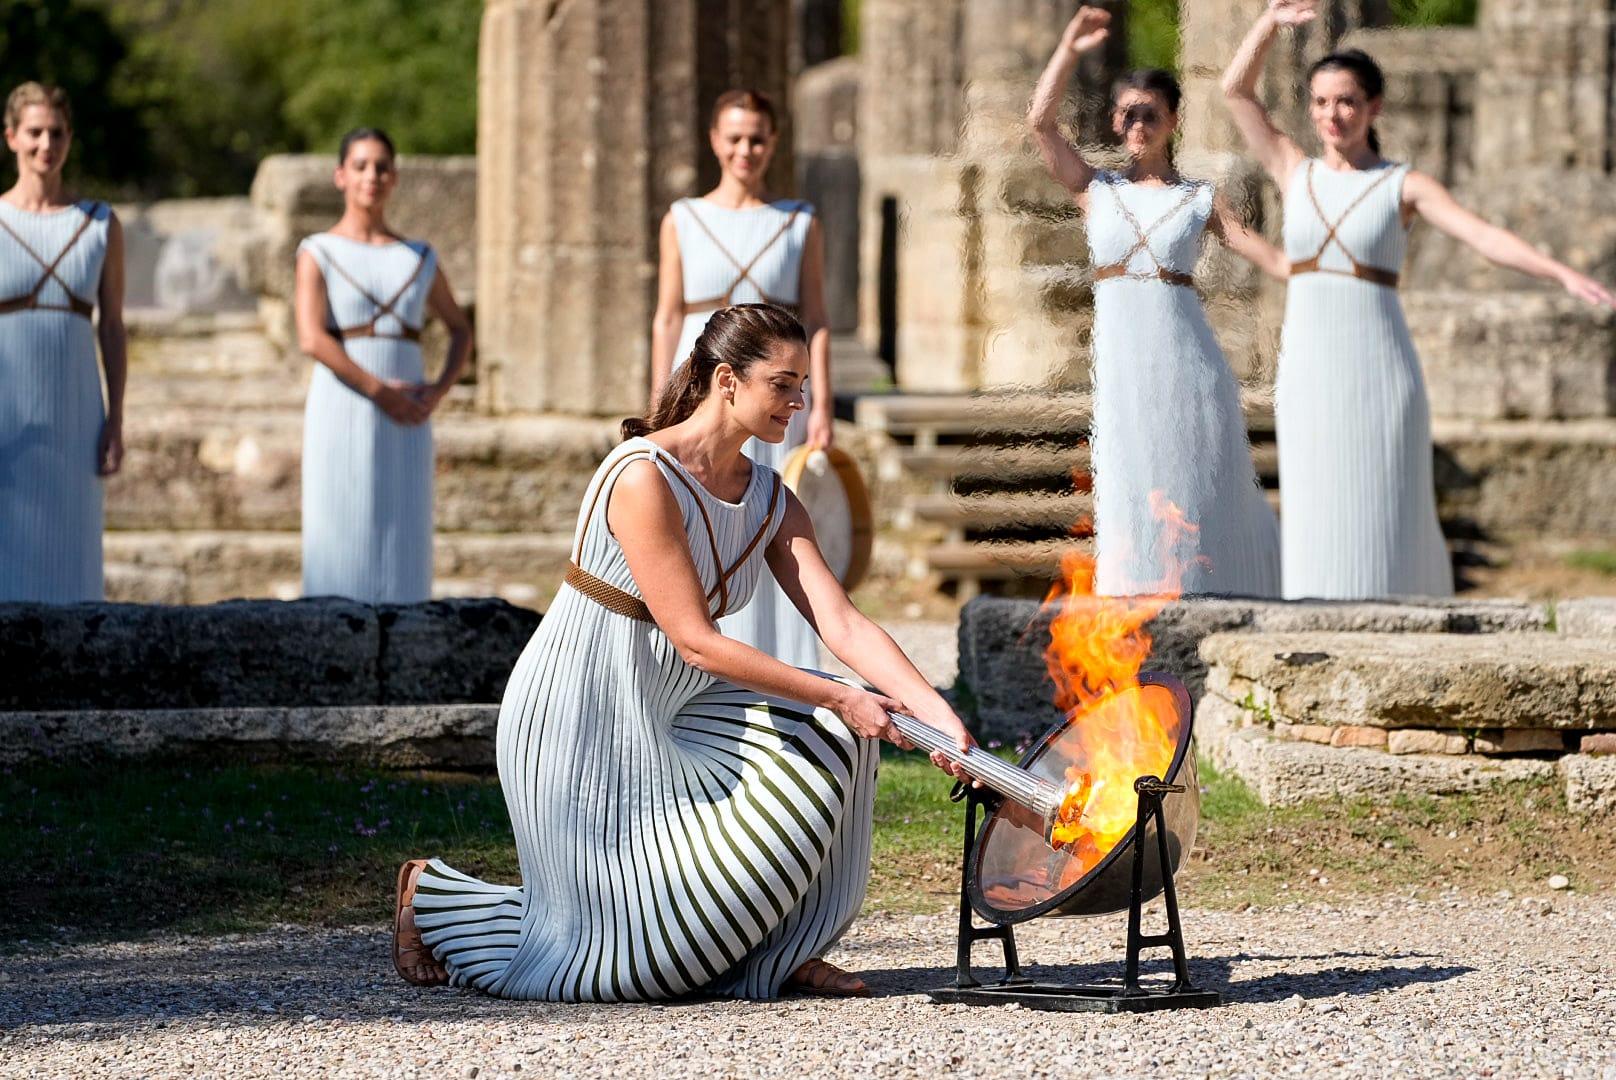 Grčka glumica Santi Georgija igrala ulogu svećenice koja je zapalila baklju - Avaz